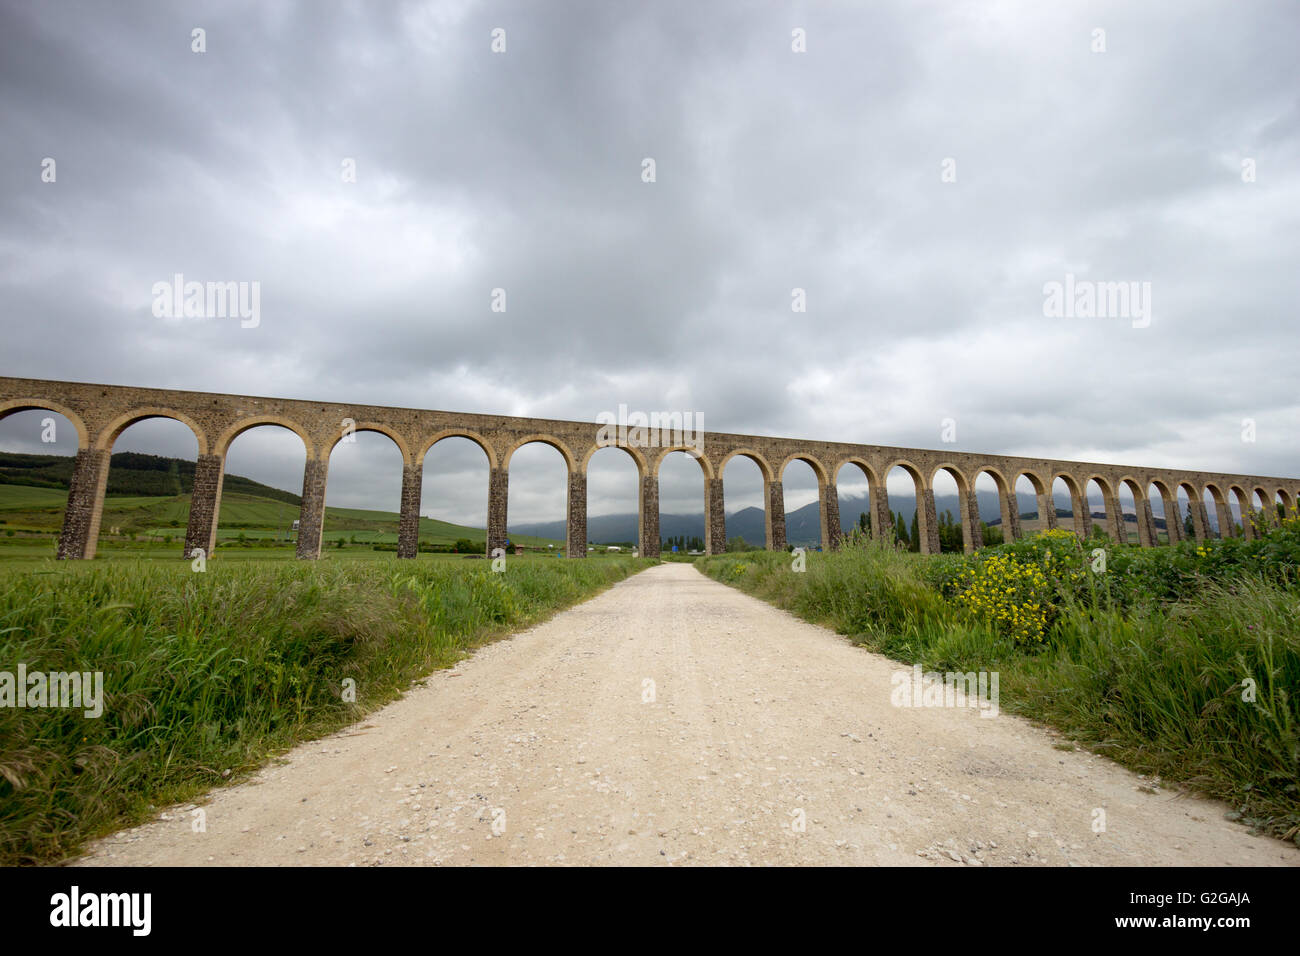 Acueducto de Noain near Pamplona city, Navarra, Spain Stock Photo